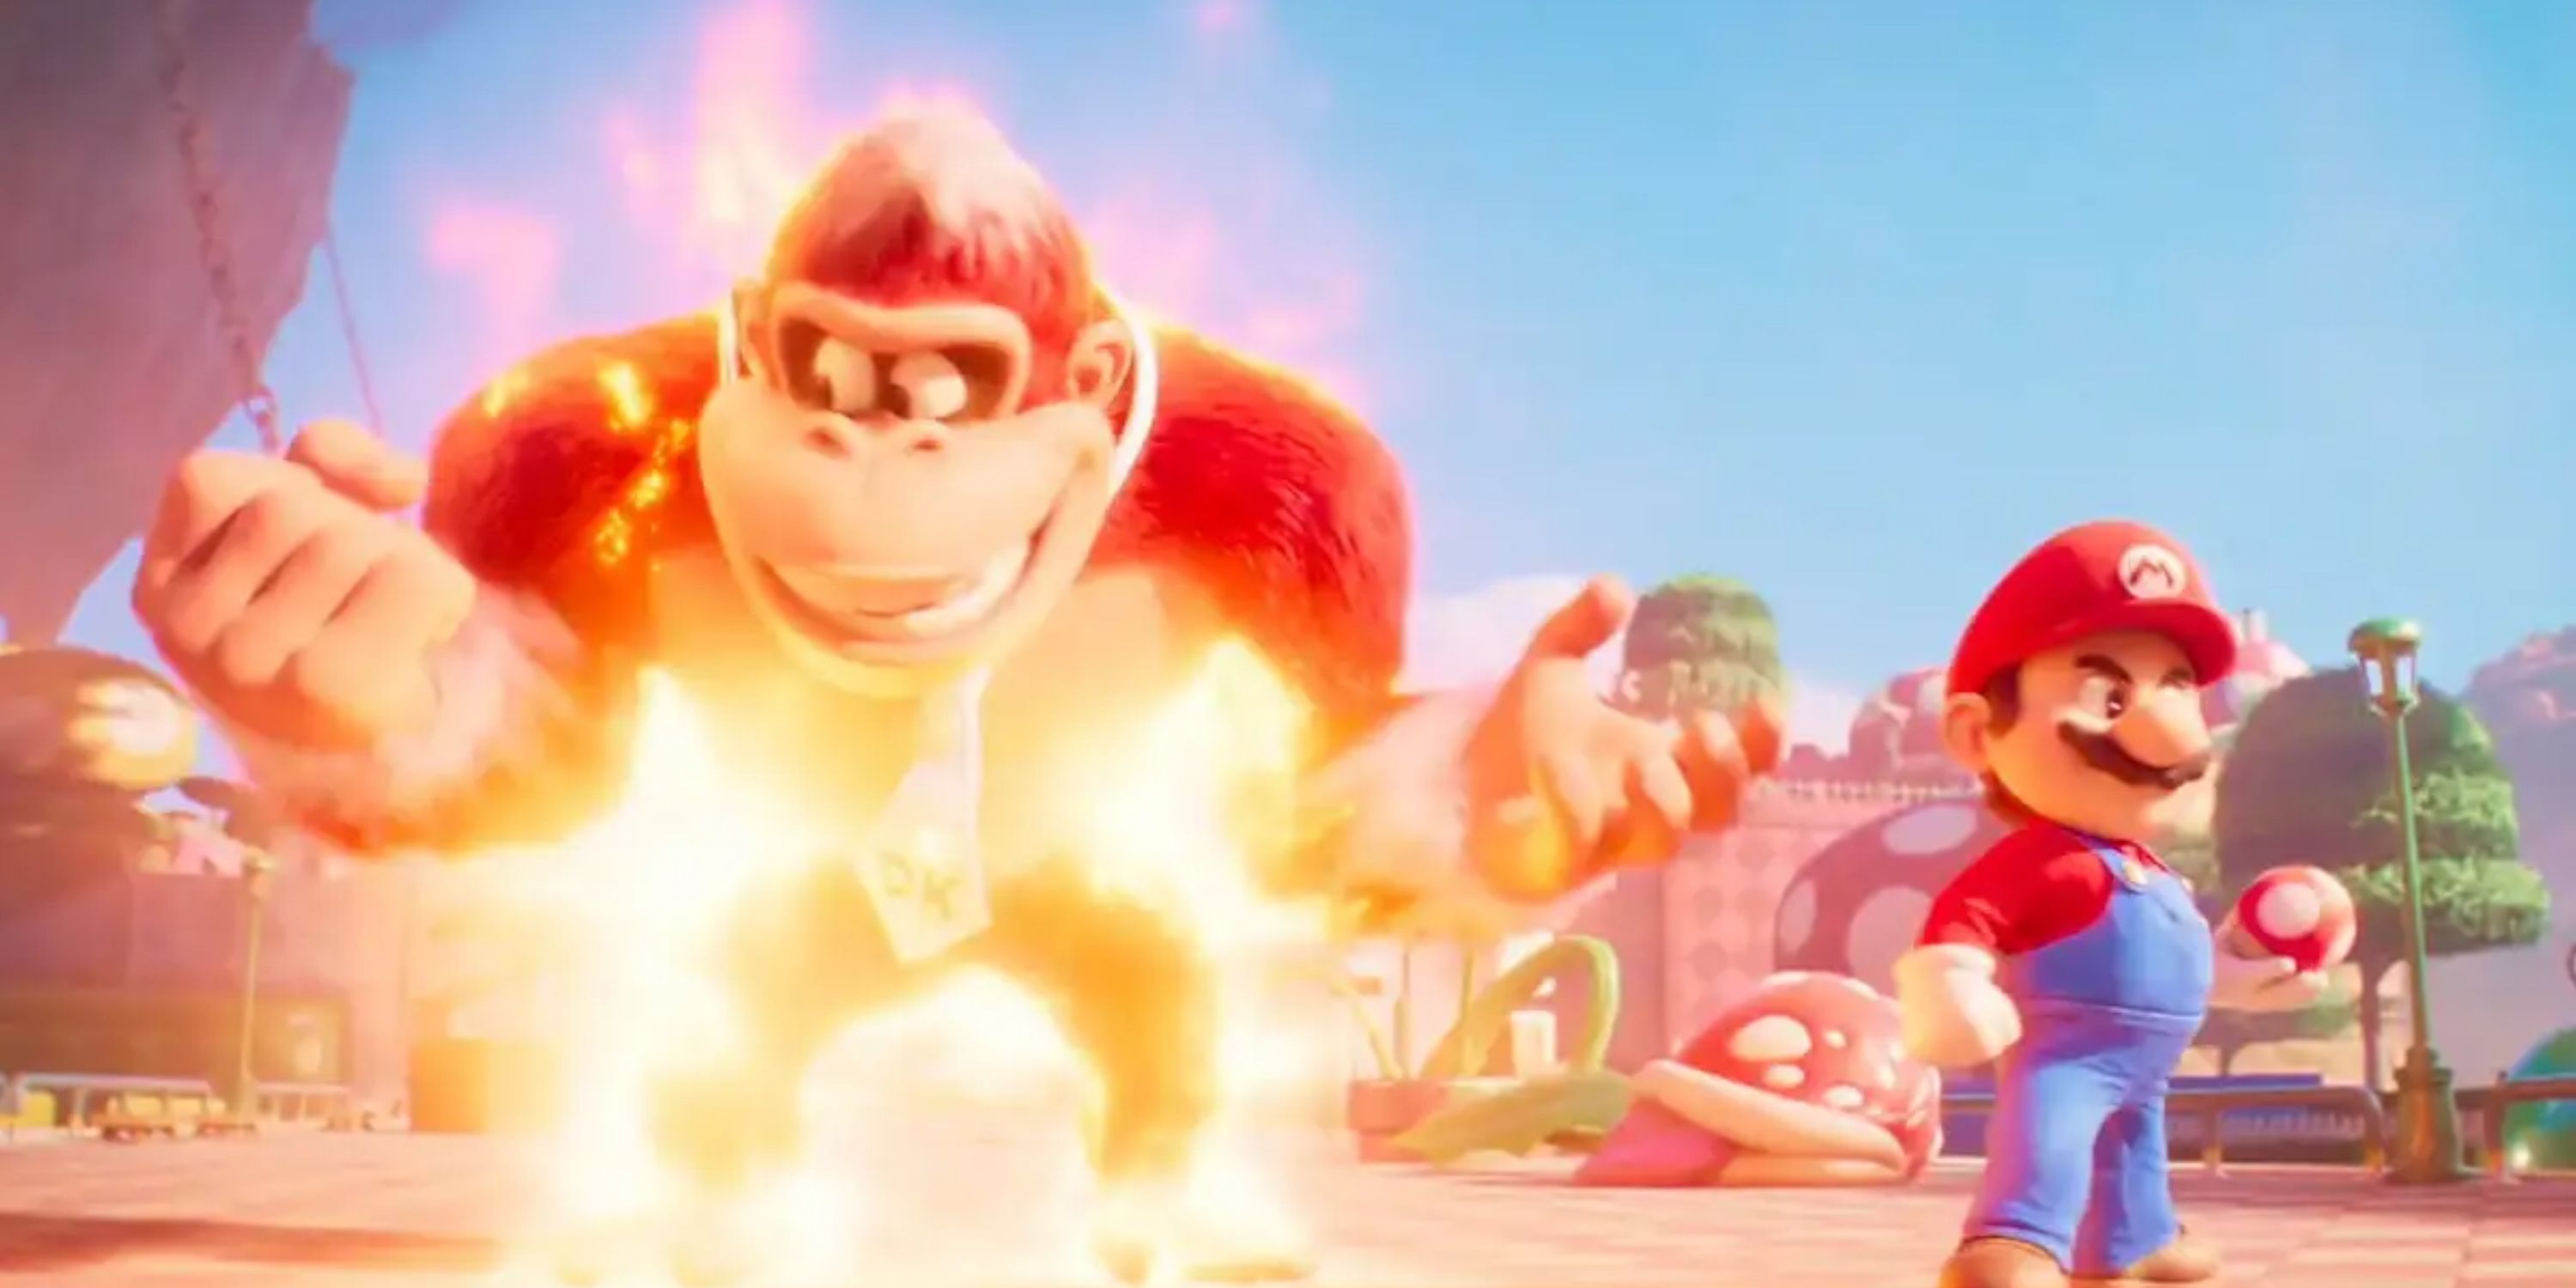 Donkey Kong brilhando com poder de fogo enquanto Mairo segura cogumelo ao lado dele